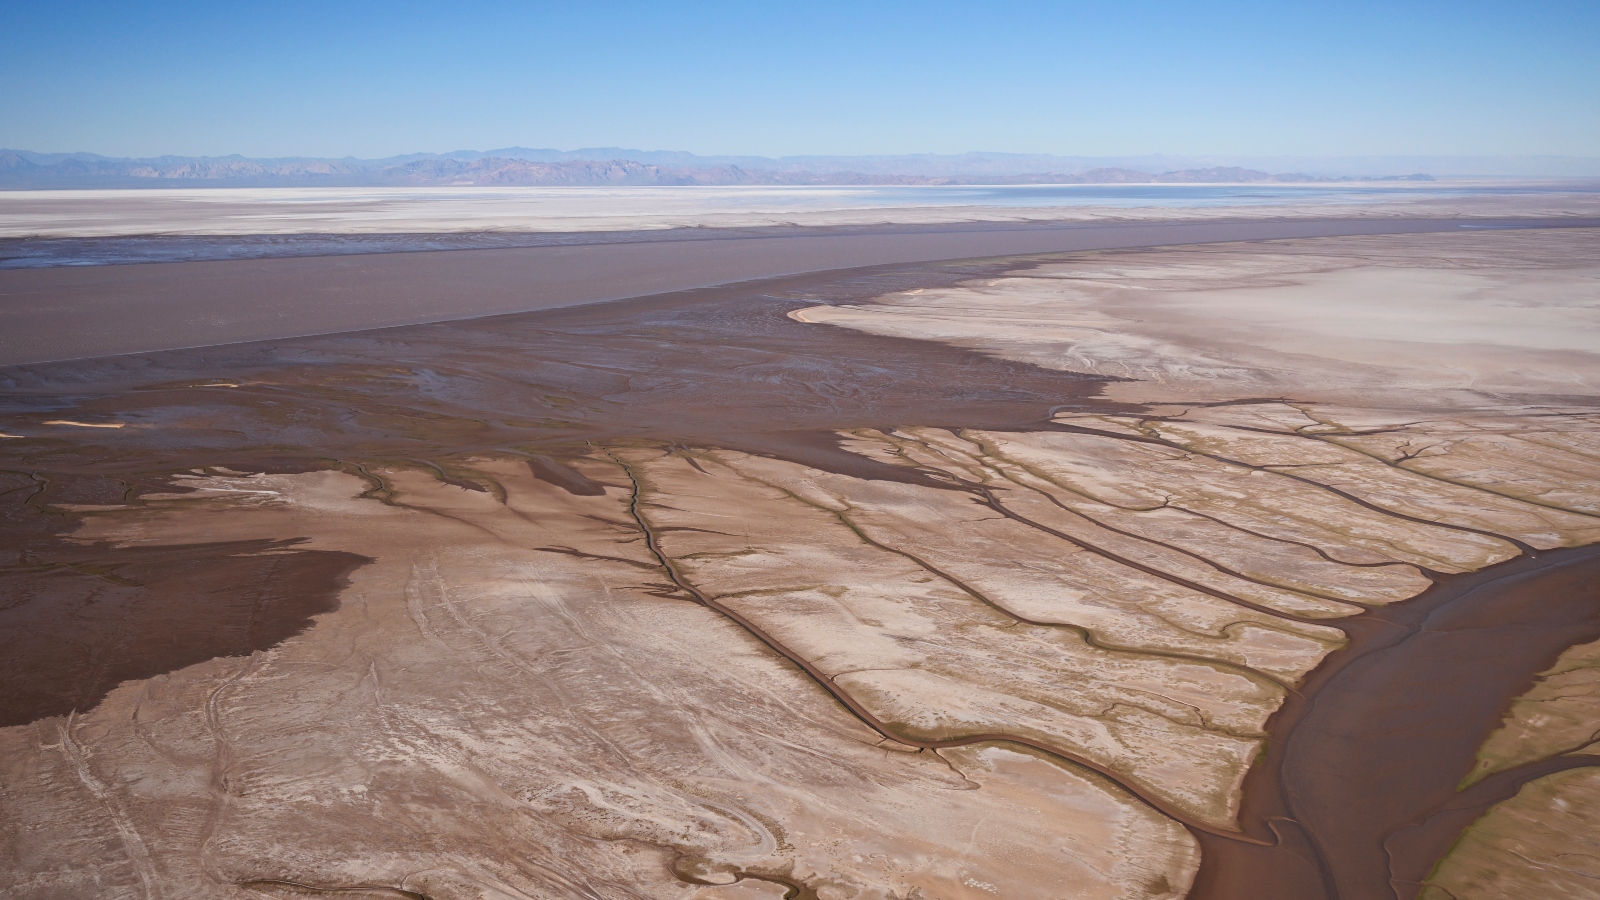 The dried-up Colorado River Delta near the Sea of Cortez.